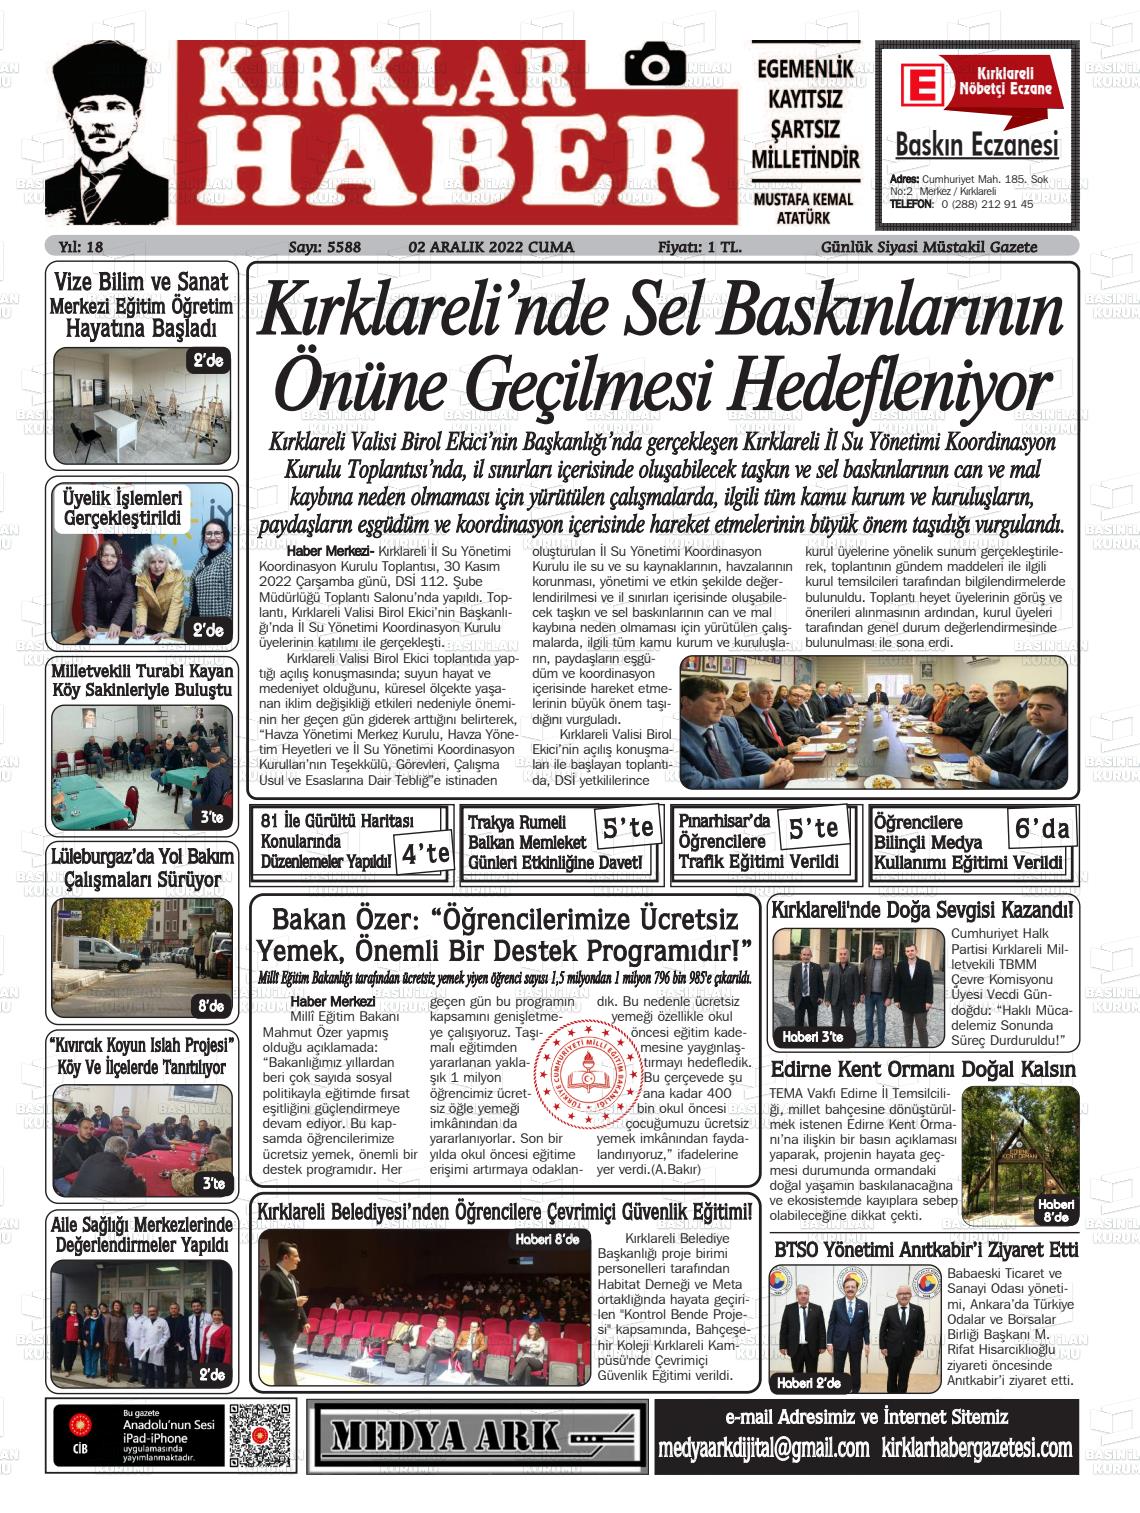 02 Aralık 2022 Kırklar Haber Gazete Manşeti